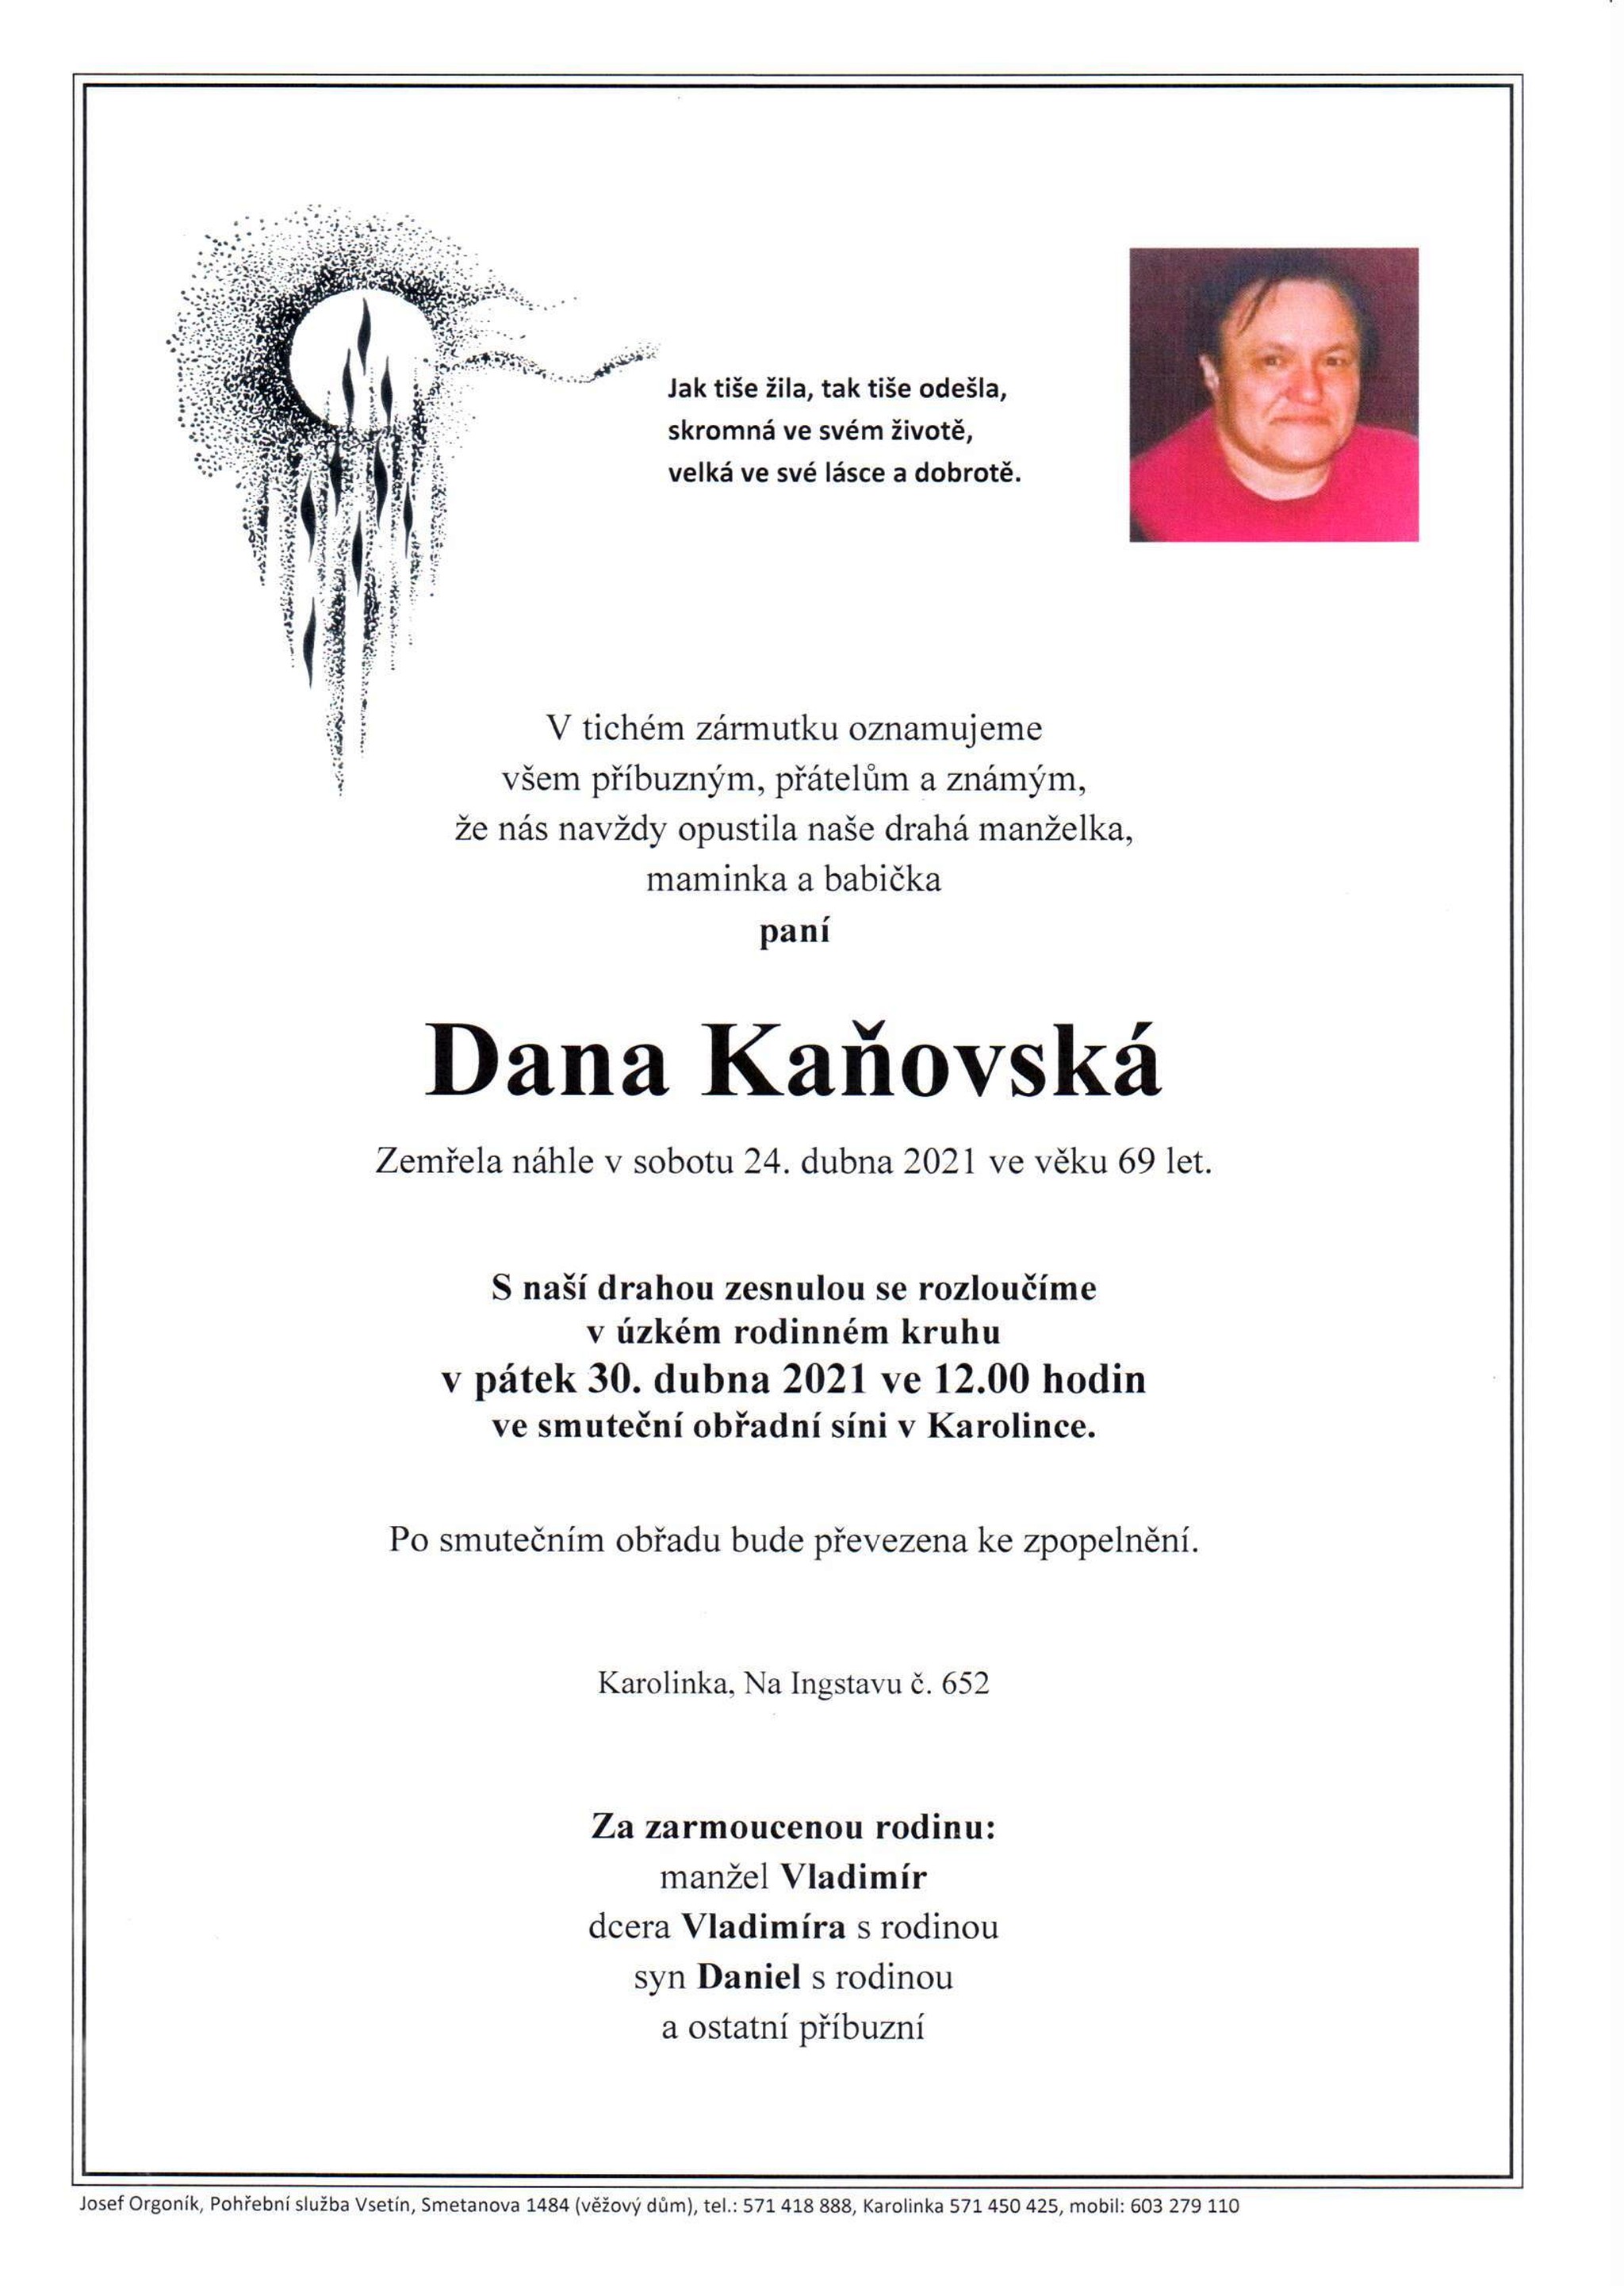 Dana Kaňovská